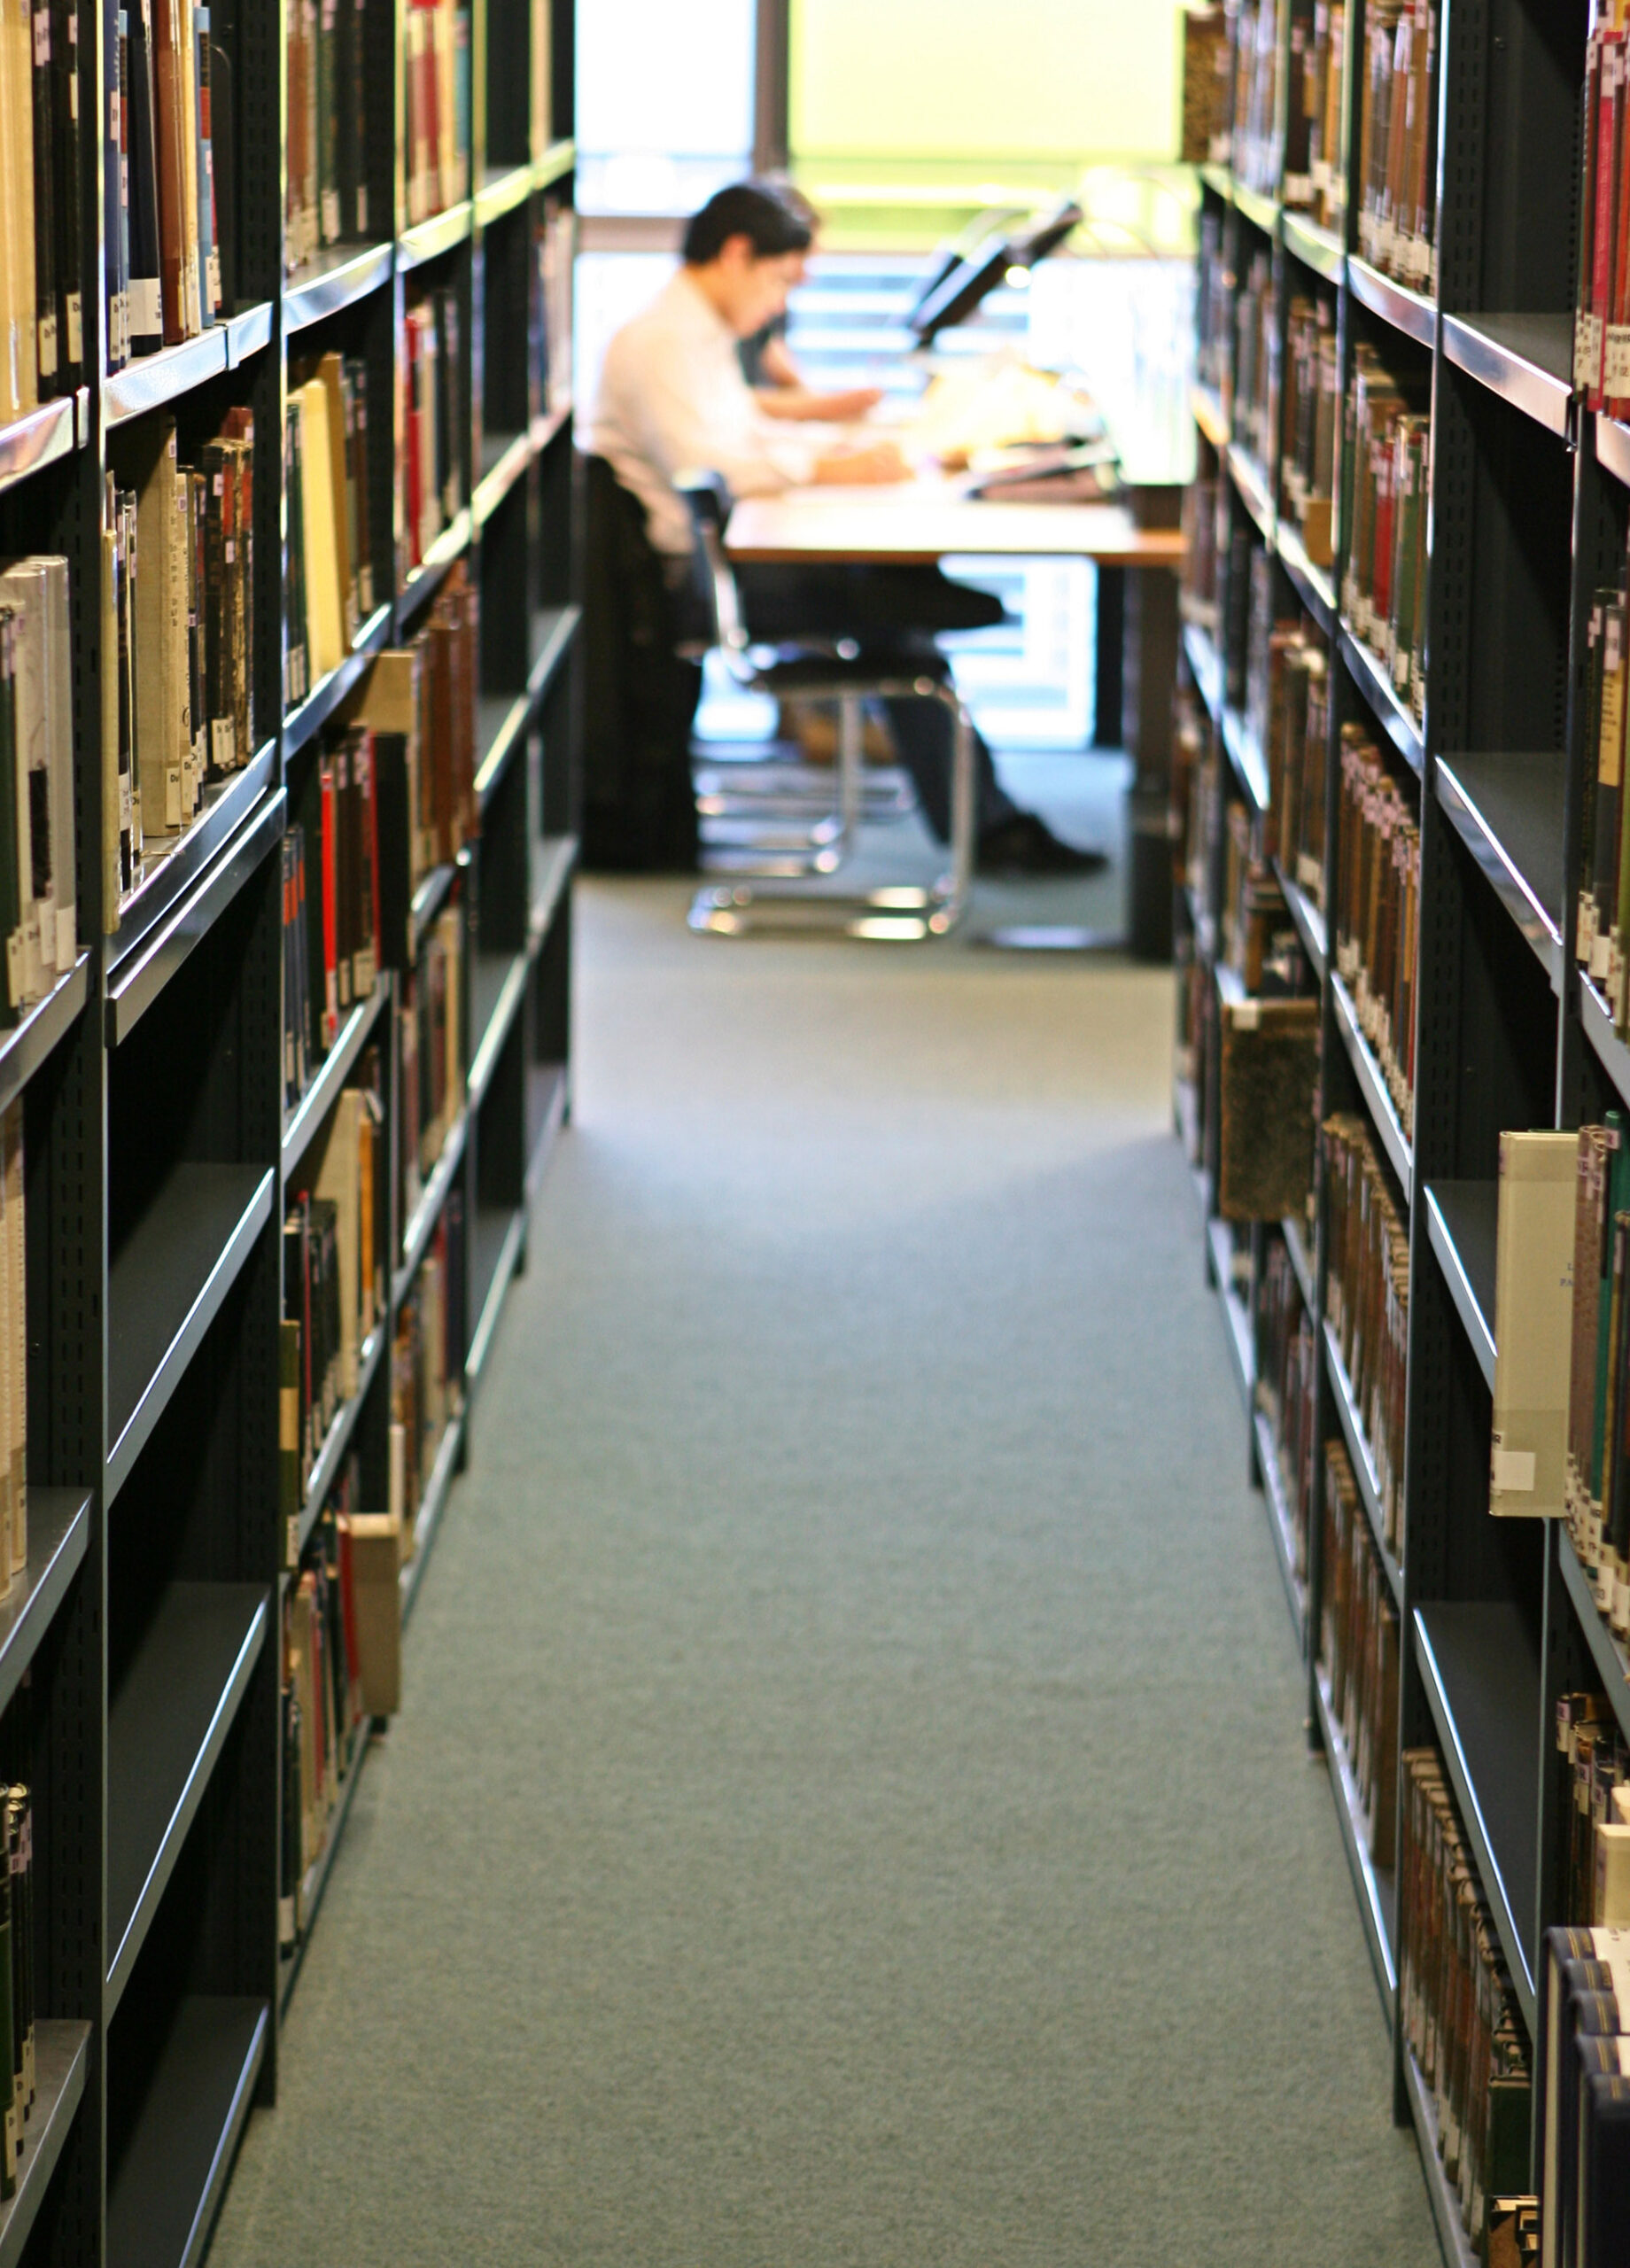 Studenten in der juristischen Universitätsbibliothek in Hamburg. (Symbolbild: Student in der juristischen Universitätsbibliothek)